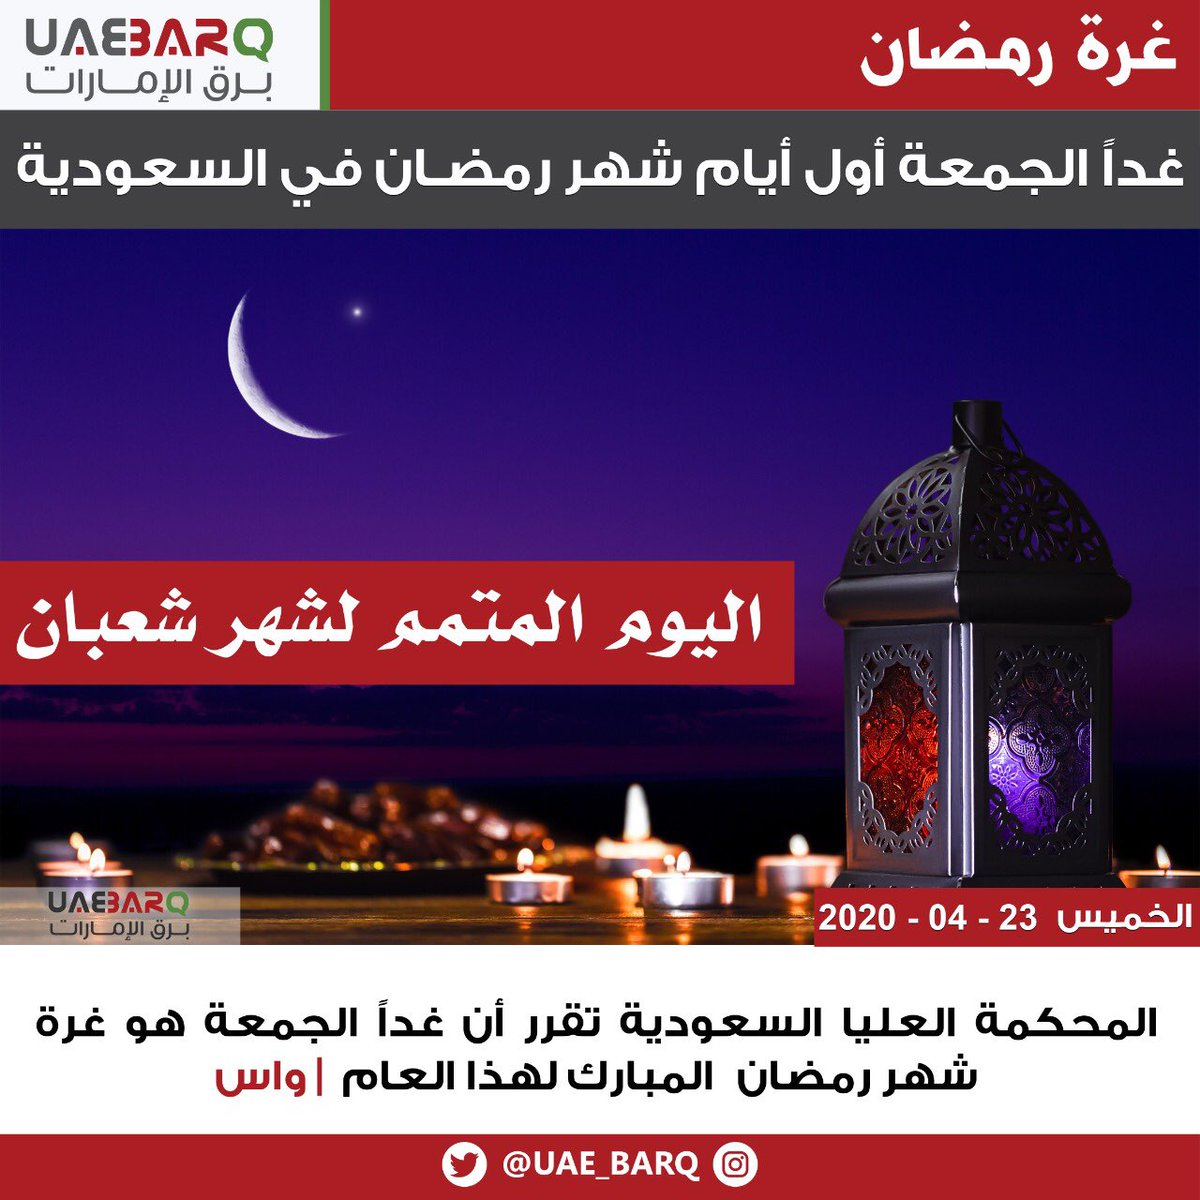 برق الإمارات On Twitter المحكمة العليا السعودية تقرر أن غدا الجمعة هو غرة شهر رمضان المبارك لهذا العام واس برق الإمارات